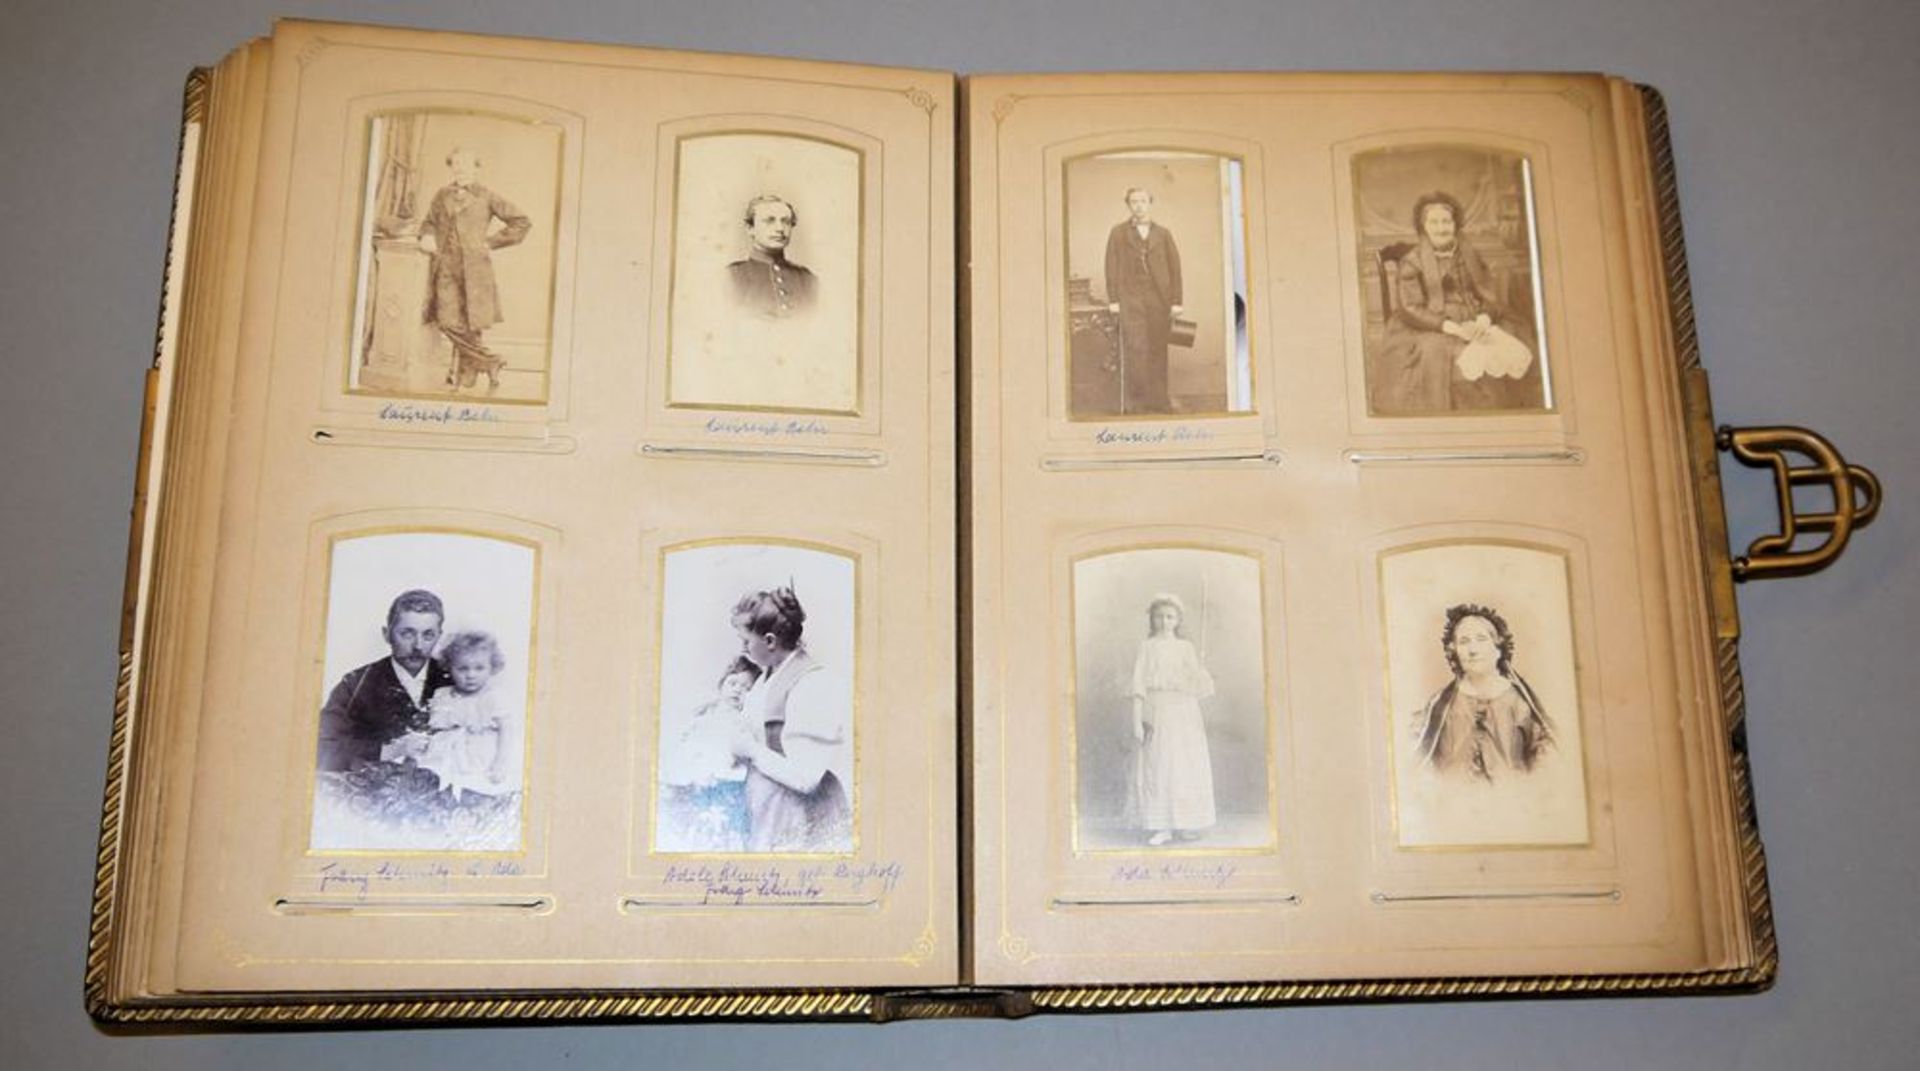 Fotoalbum der Adelsfamilie Behr, 19. Jh. - Image 3 of 4